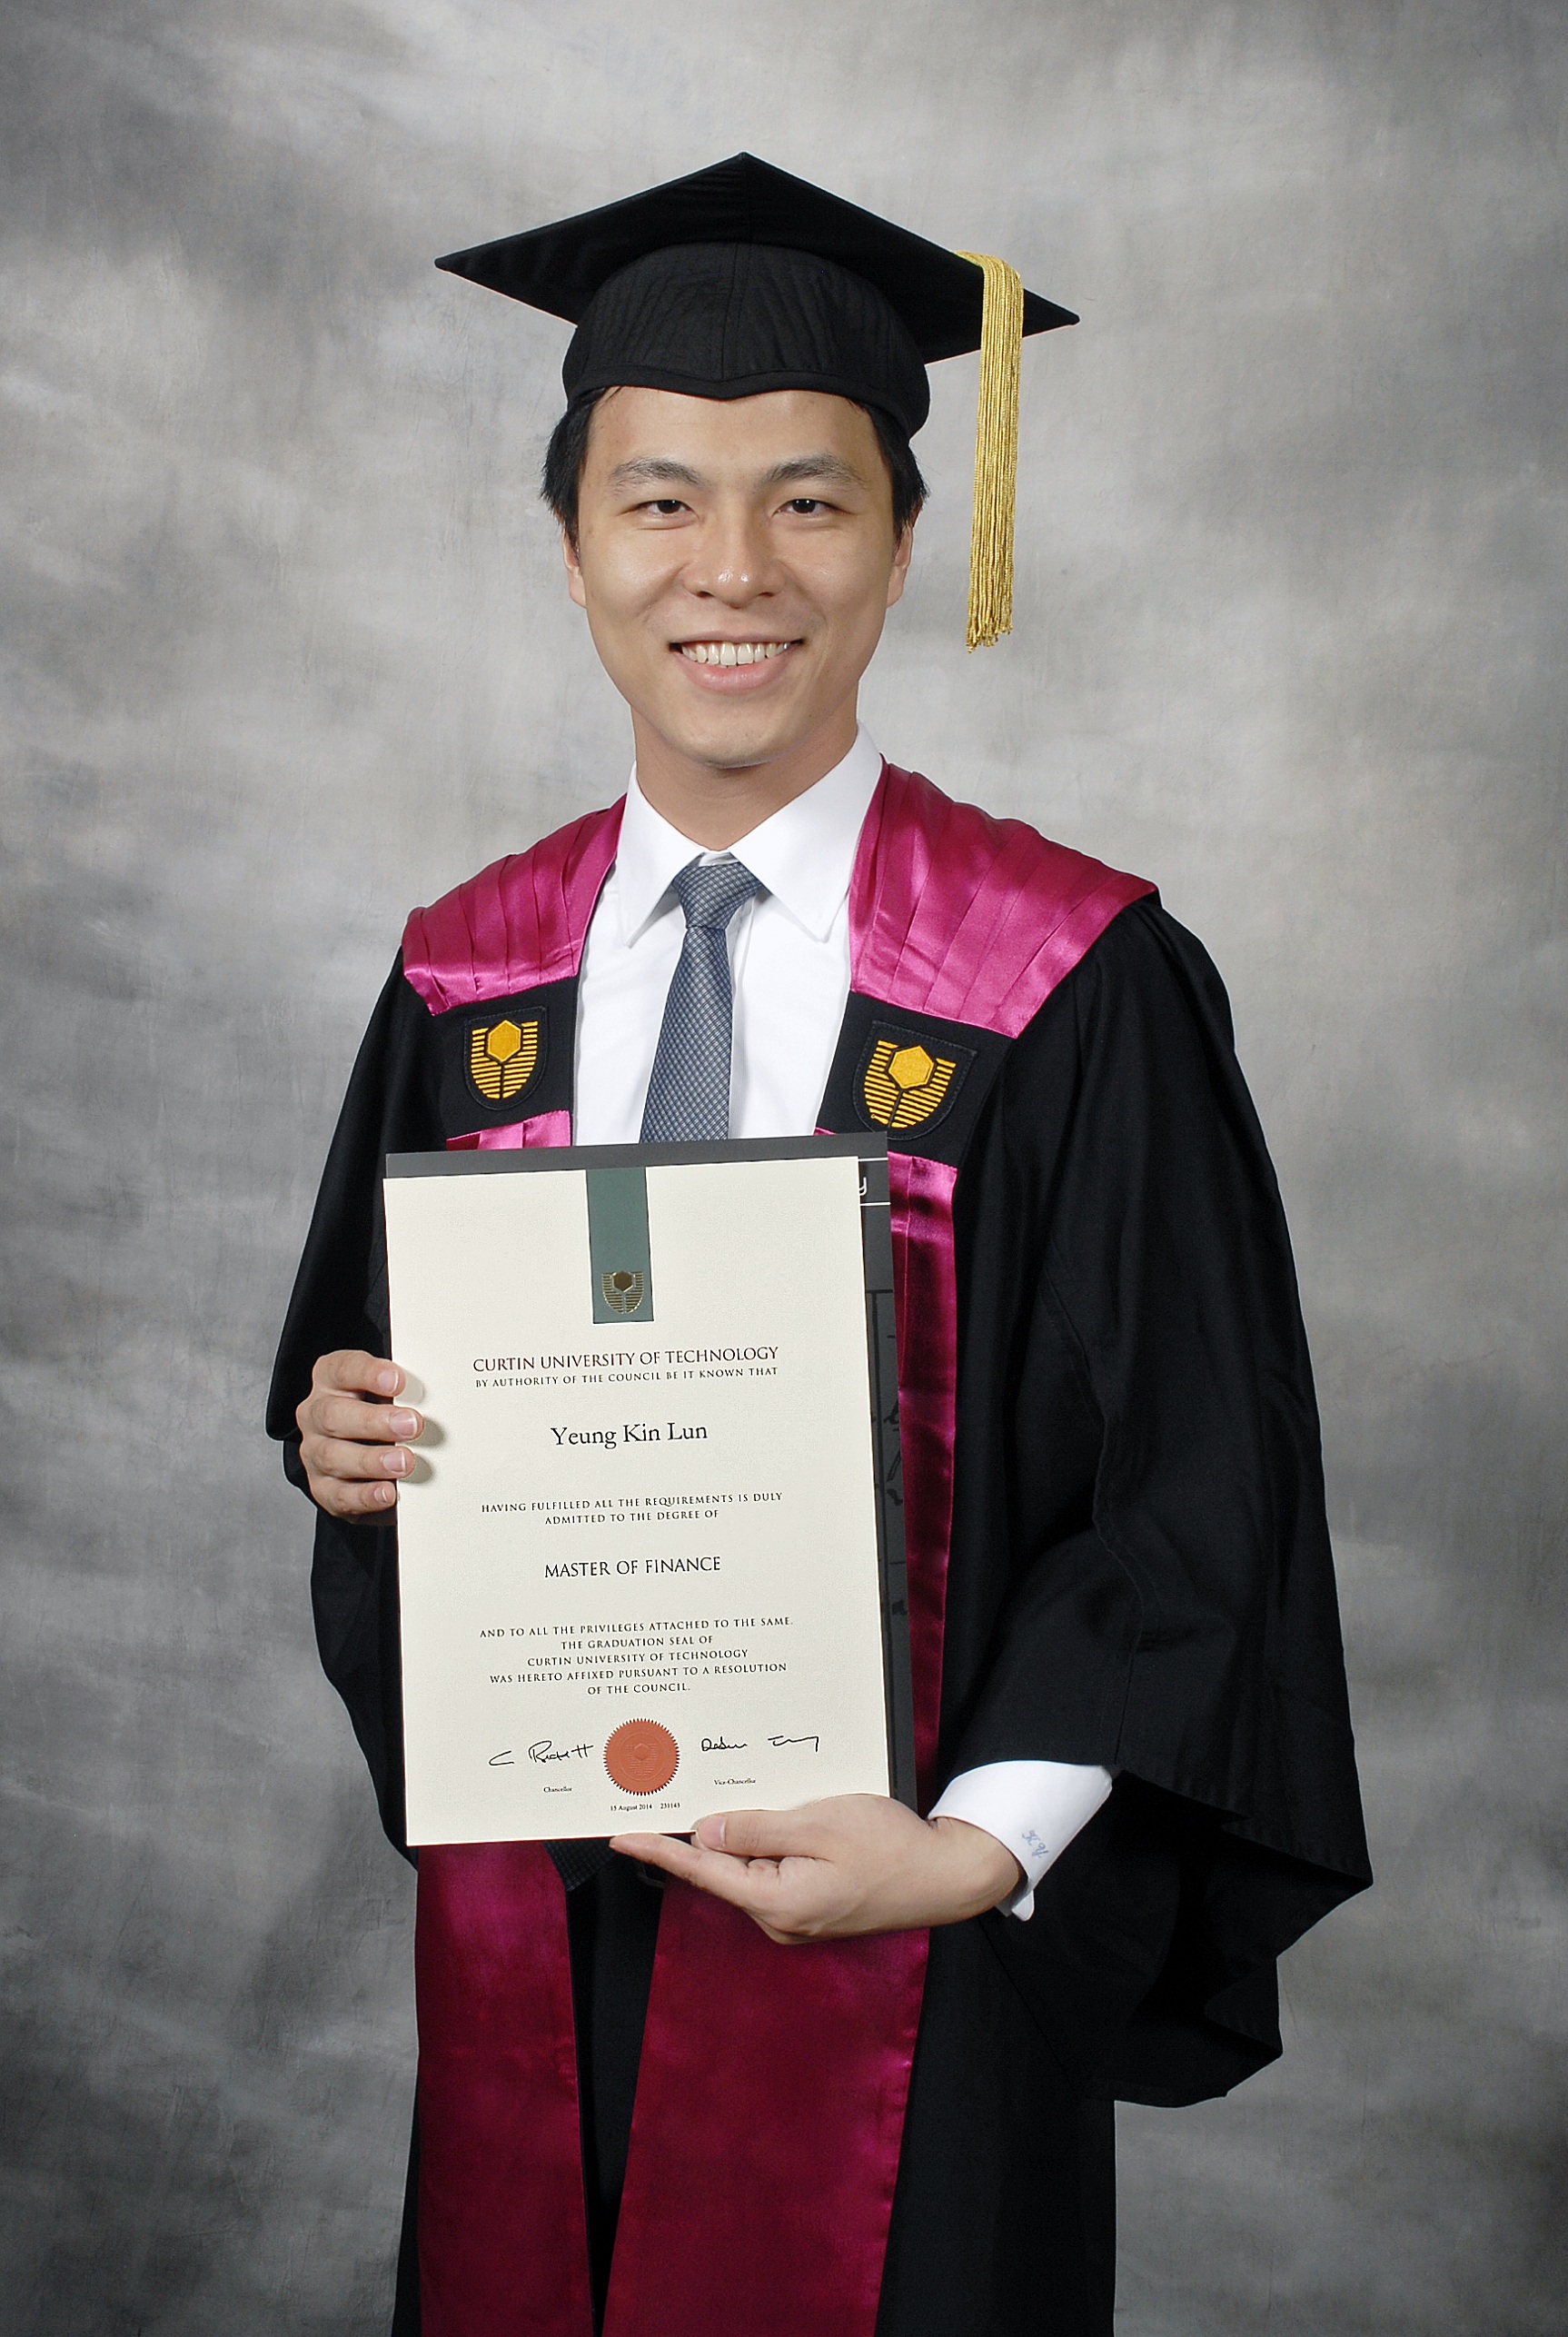 Phd thesis hku